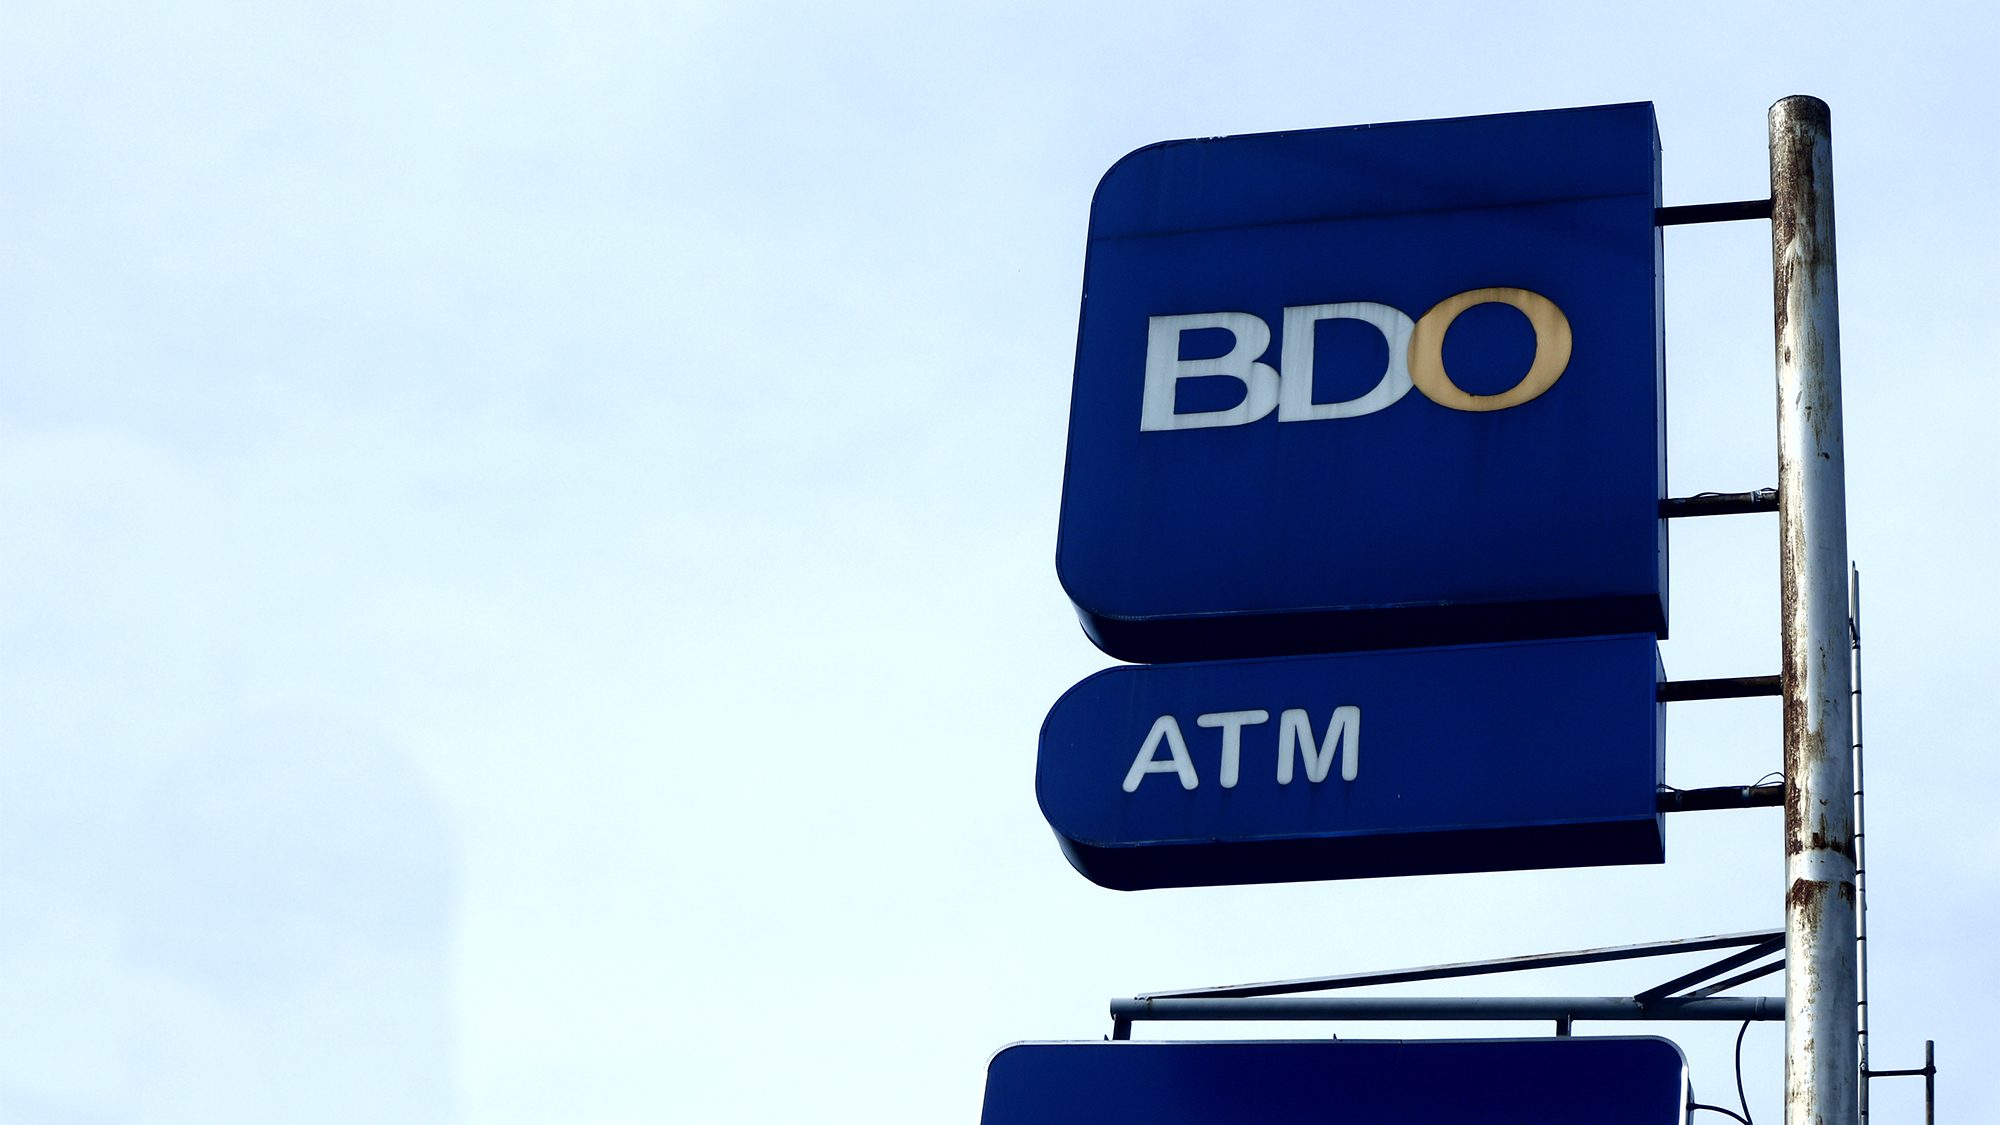 Bangko Sentral warns banks: Treat customers fairly